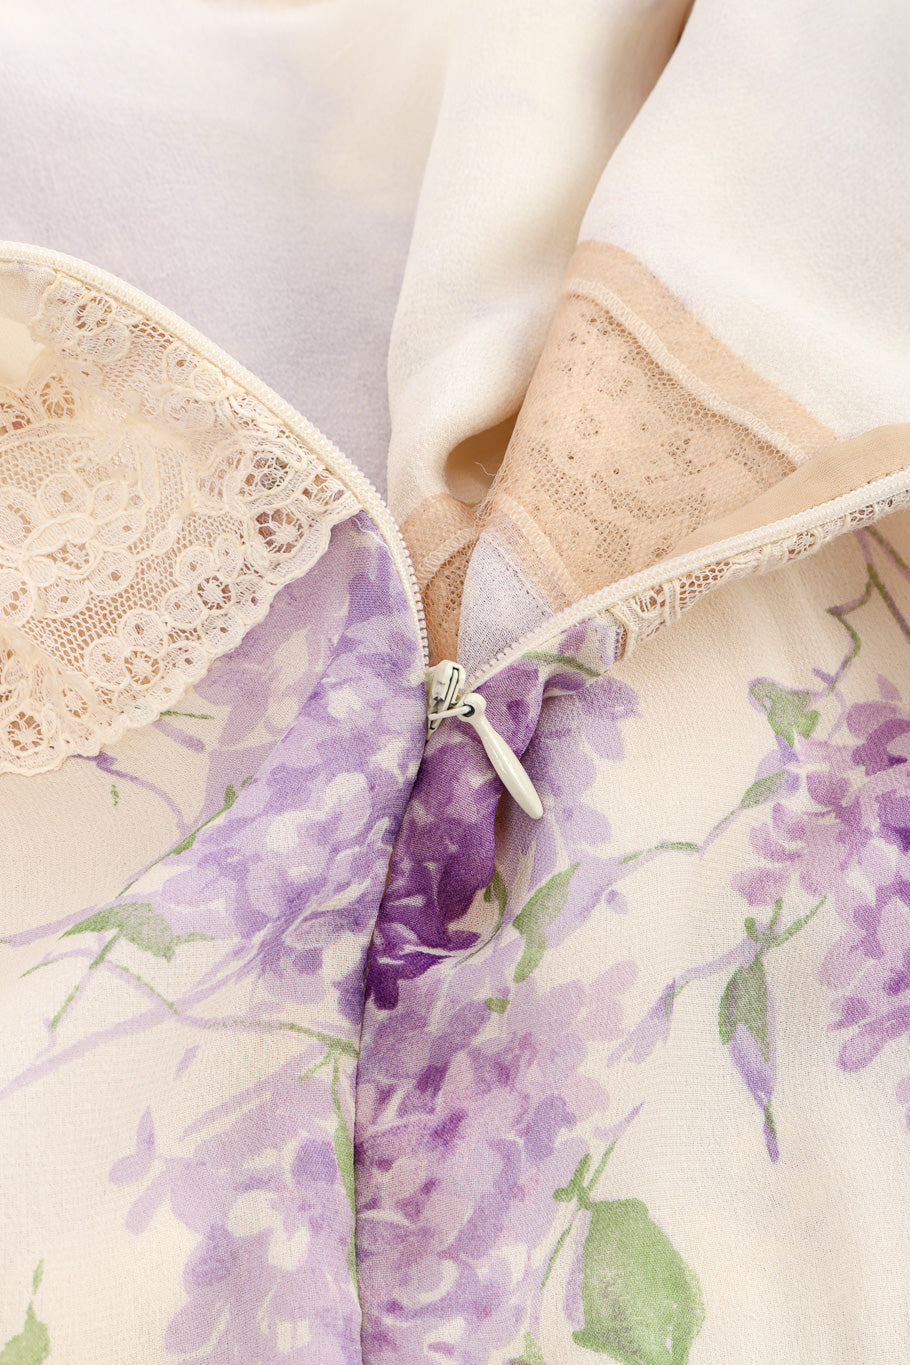 Vintage Valentino Floral Lace Maxi Dress zipper closure closeup @Recessla